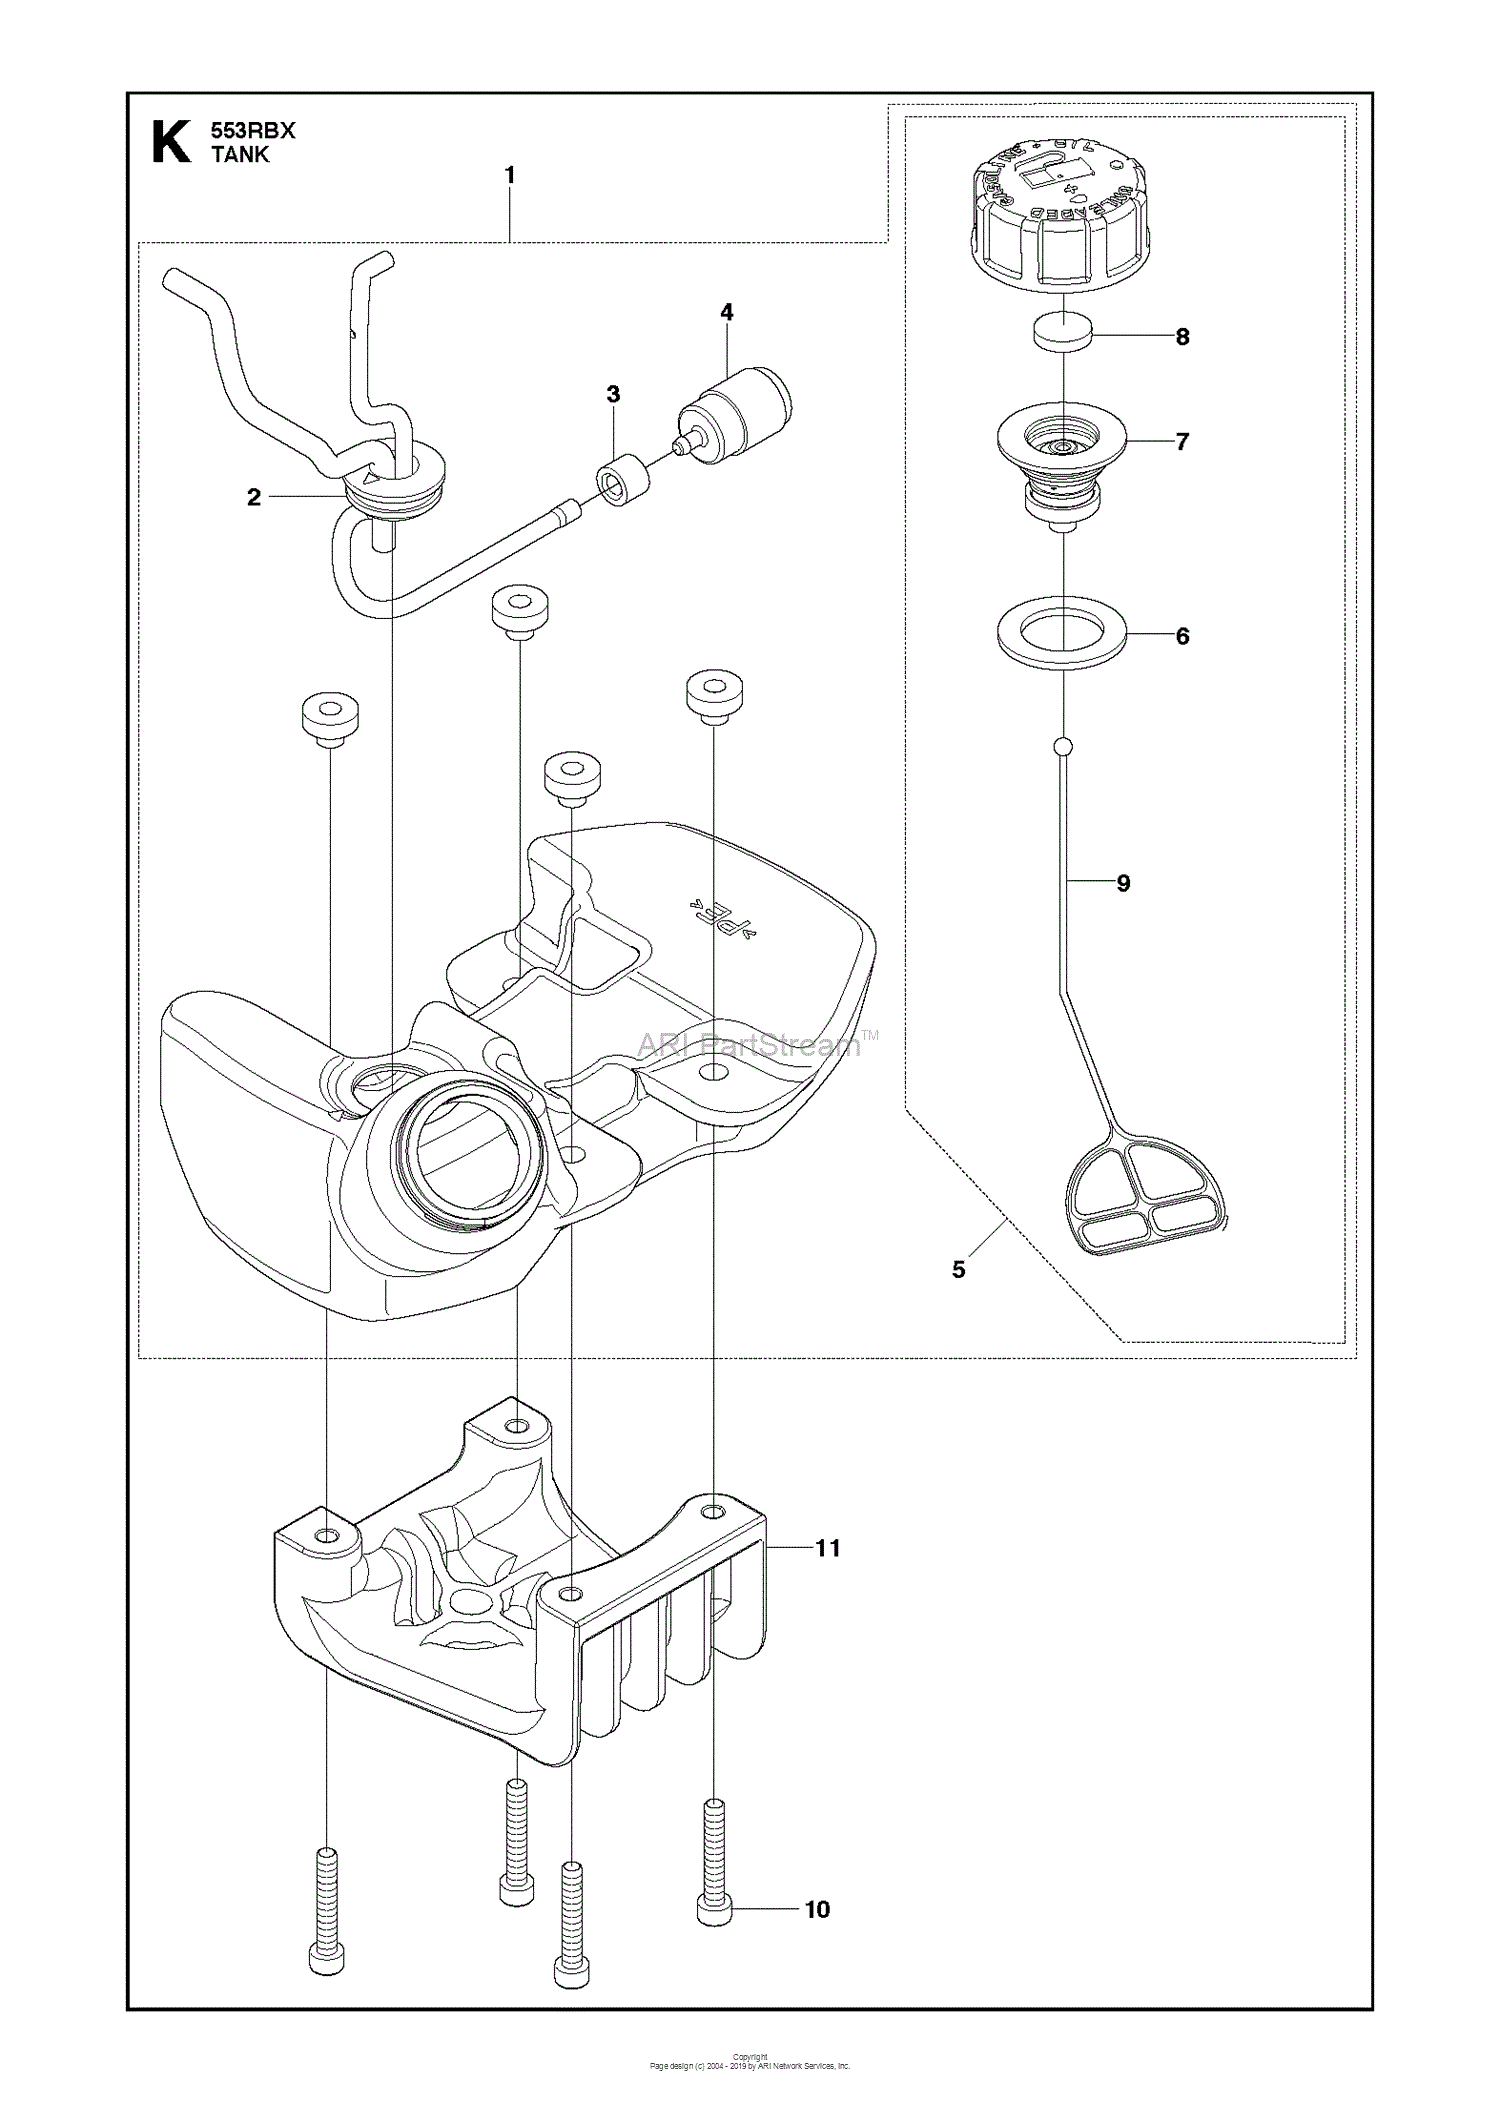 Husqvarna 553RBX (2012-08) Parts Diagram for FUEL TANK